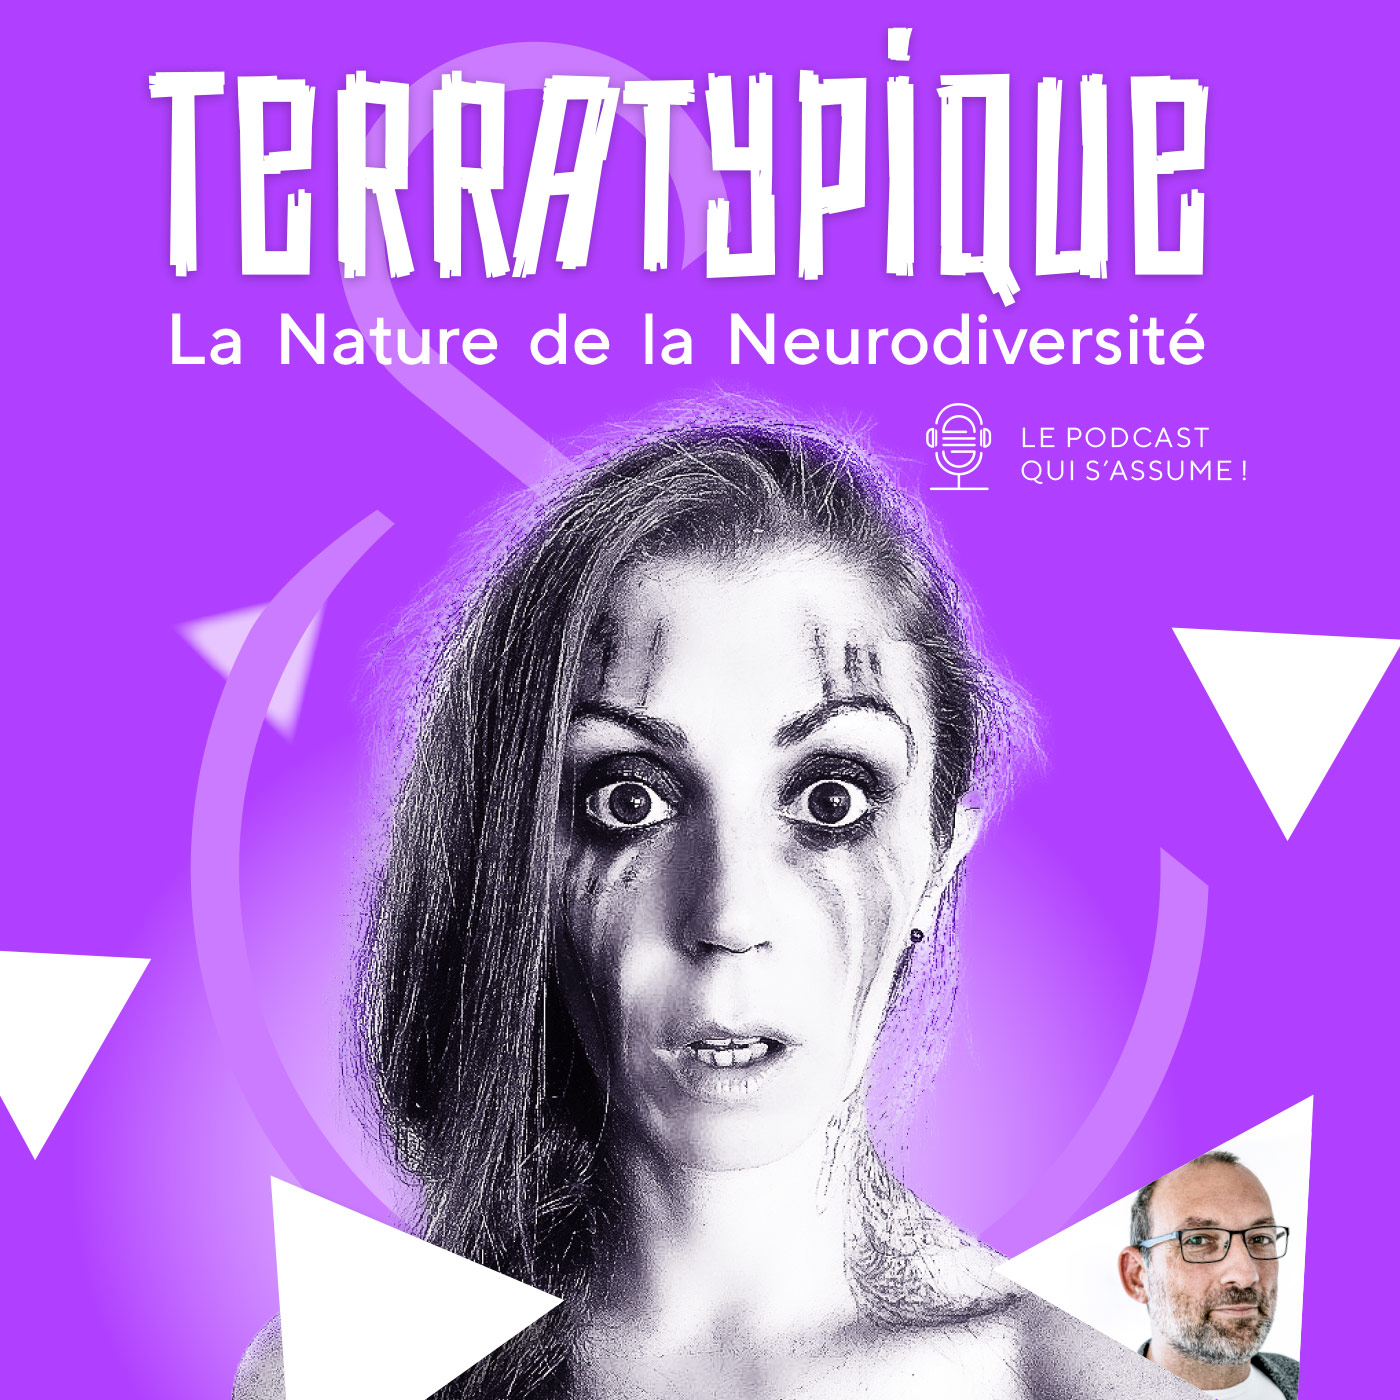 Le Podcast Terratypique : le podcast qui s'assume !